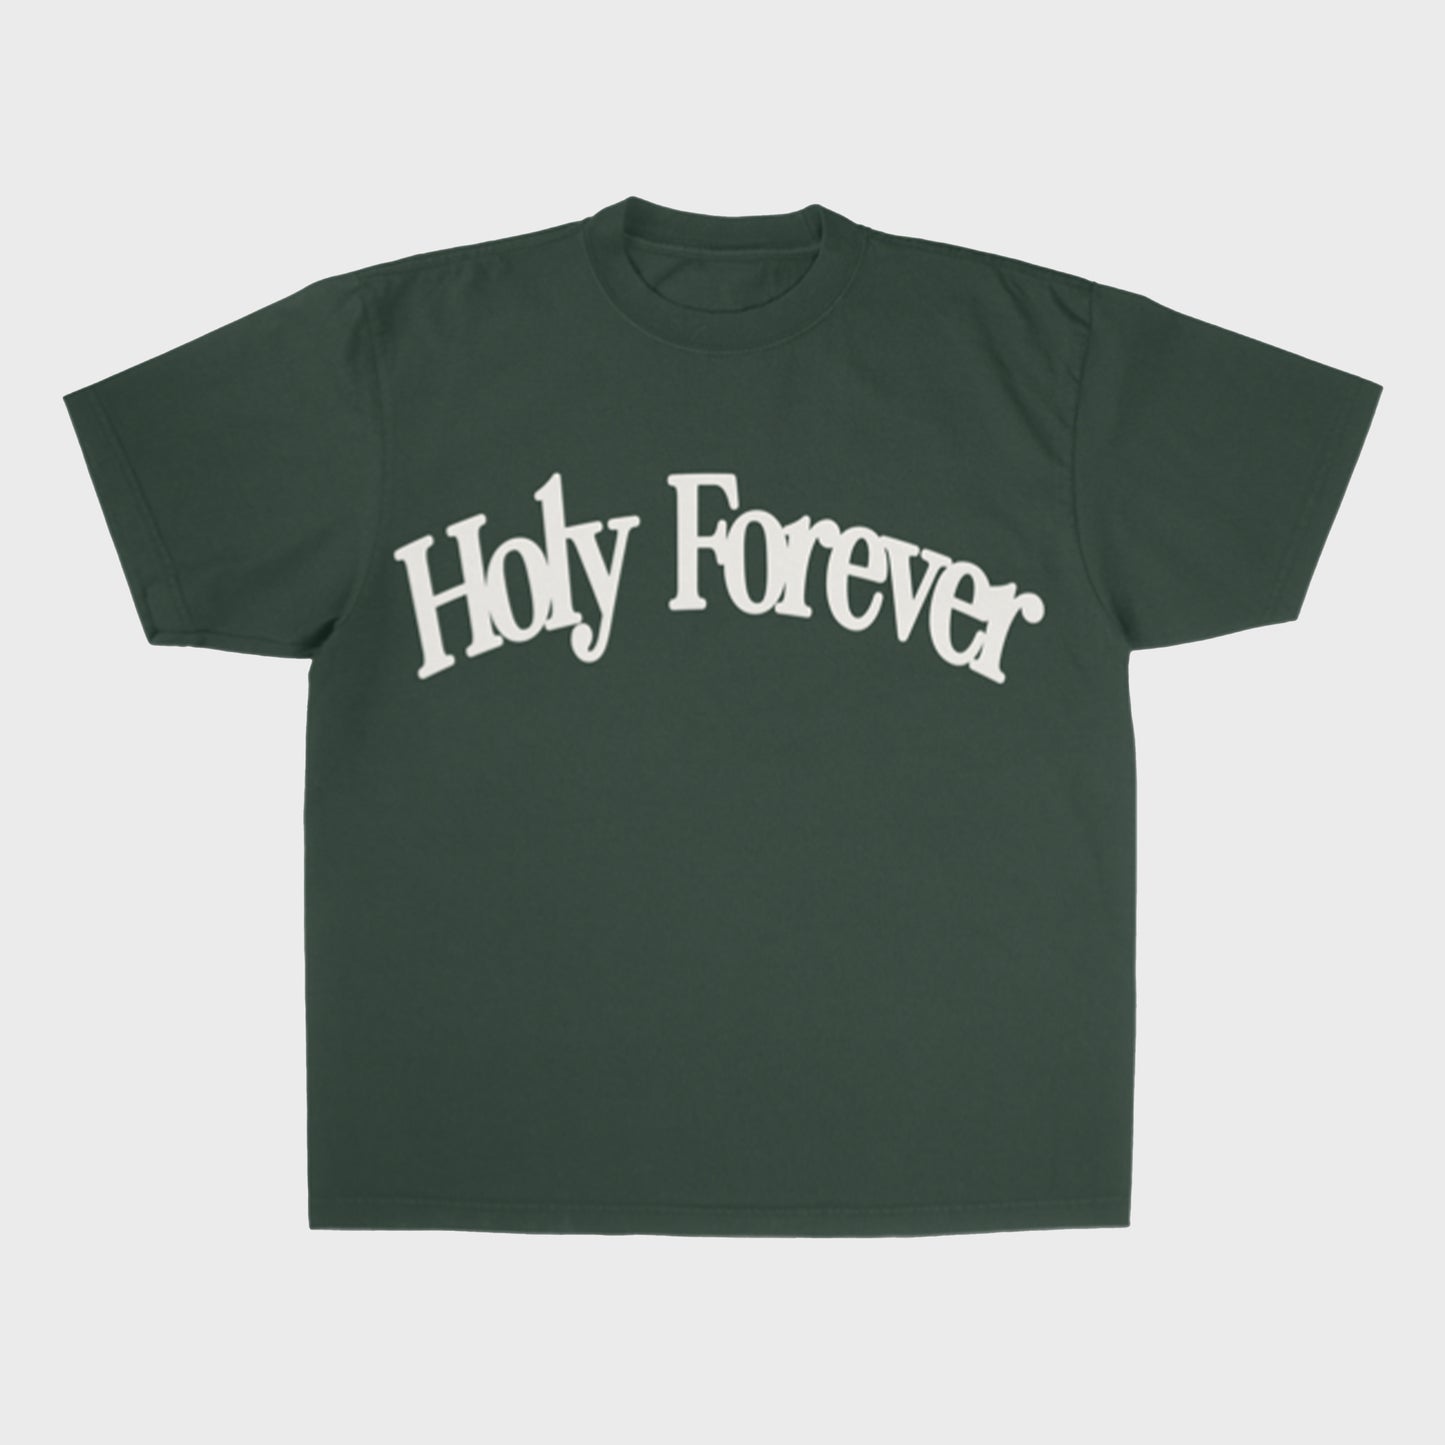 Holy Forever  Bethel Music